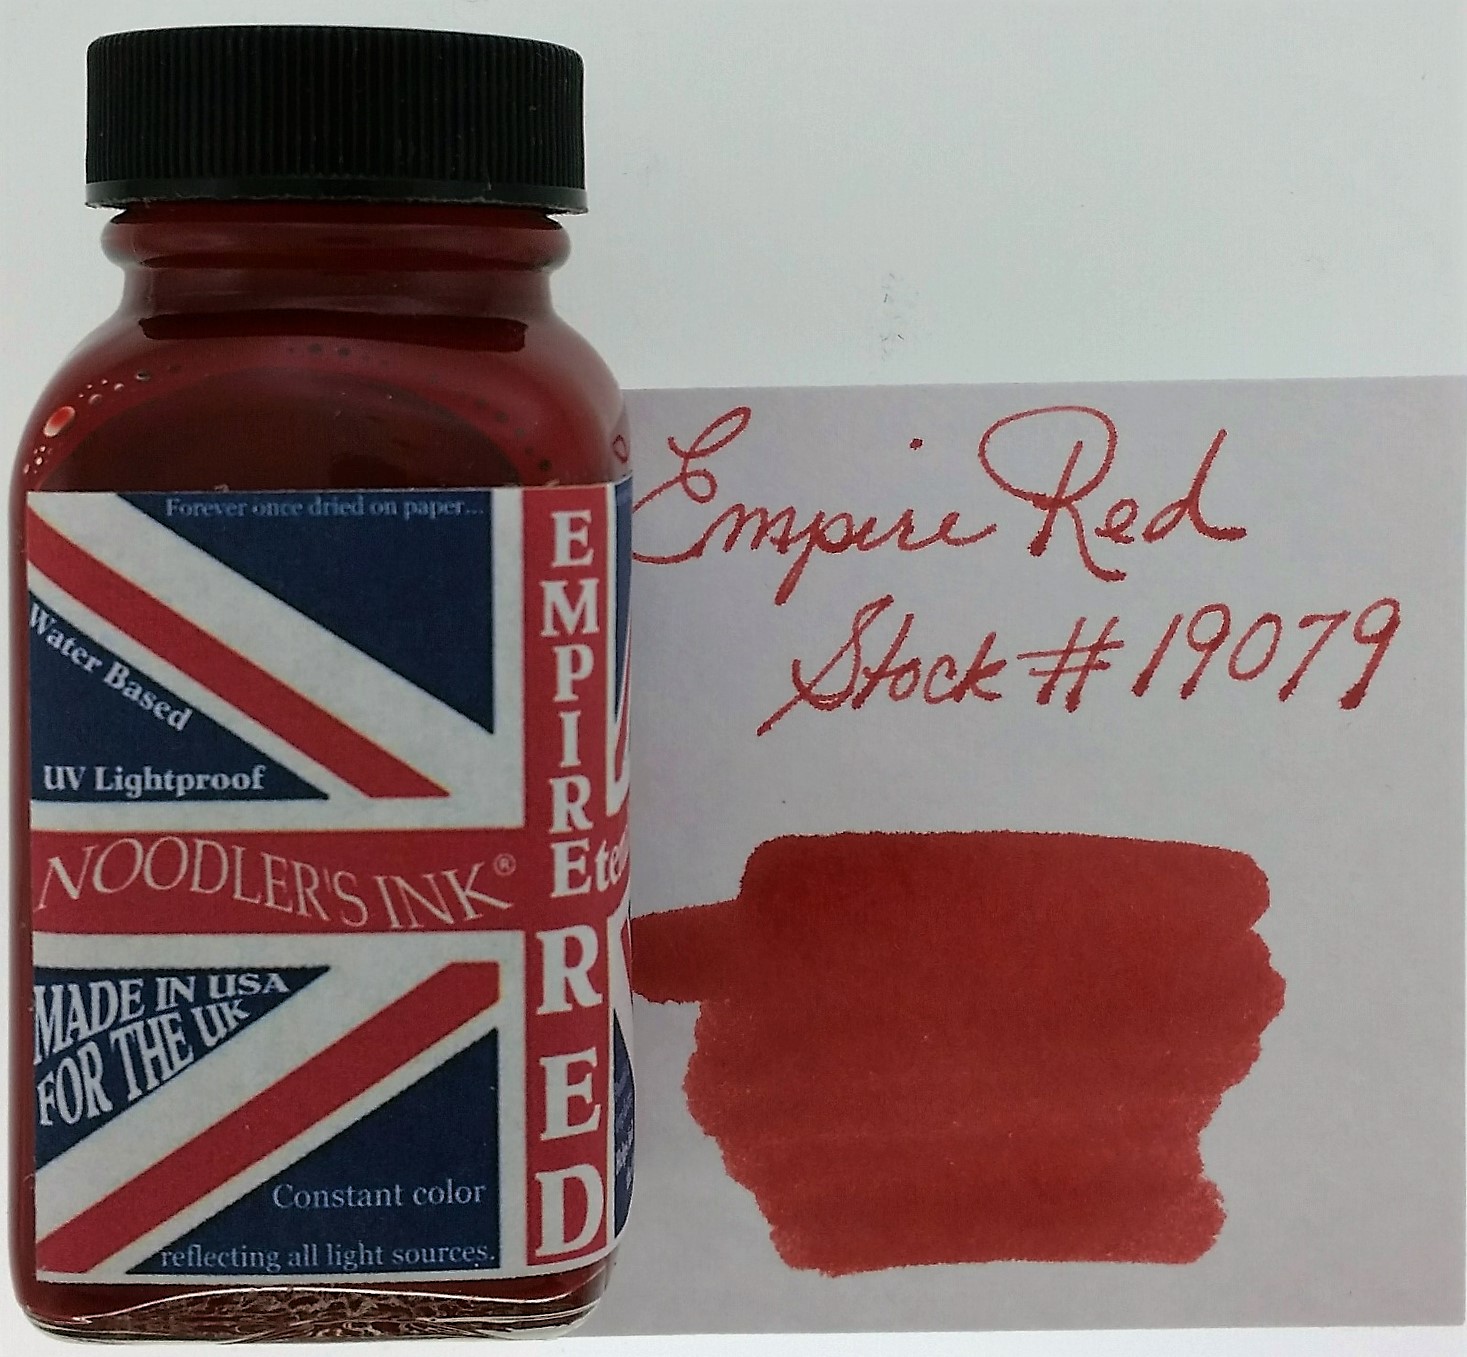 19019 Red-Black — Noodler's Ink